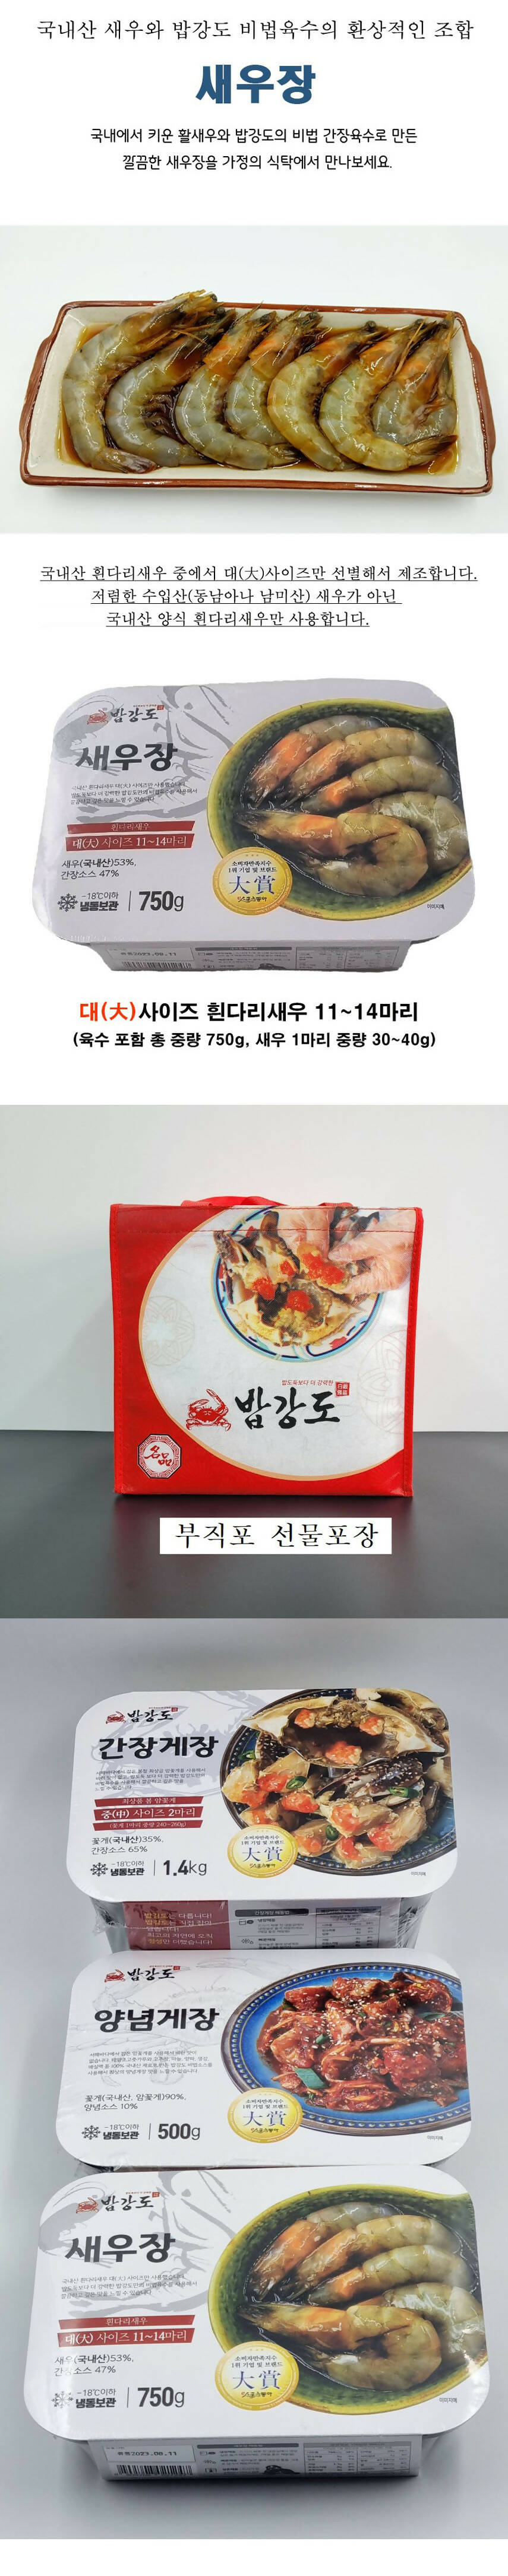 [고국배송] 최상품 군산 밥강도 3종 선물세트 (간장게장 1.4kg + 양념게장 500g + 새우장700g)